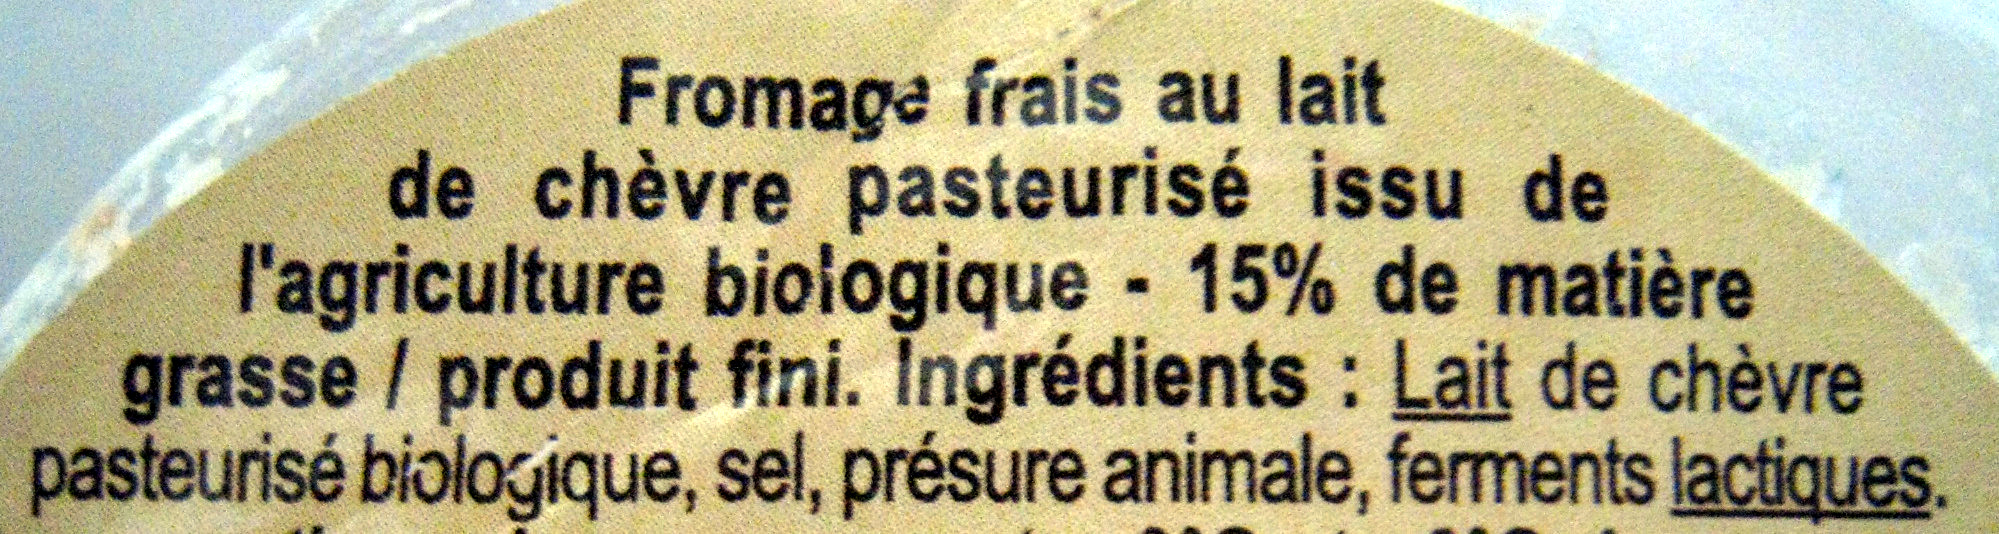 Fromage frais de chèvre nature - Ingredients - fr